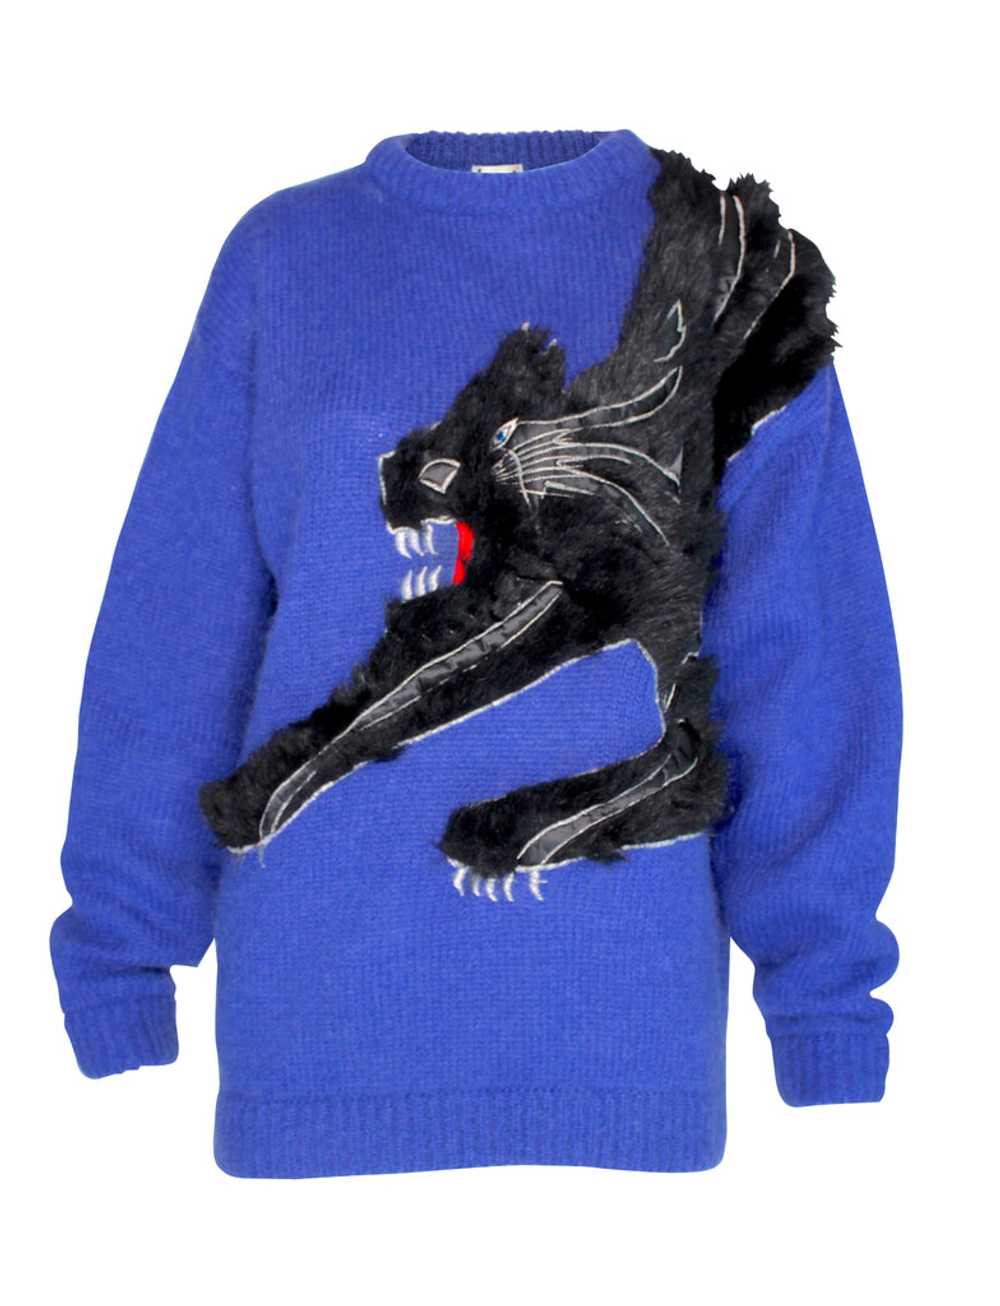 Kansai Yamamoto Cobalt Blue Knit Sweater with Bla… - image 1